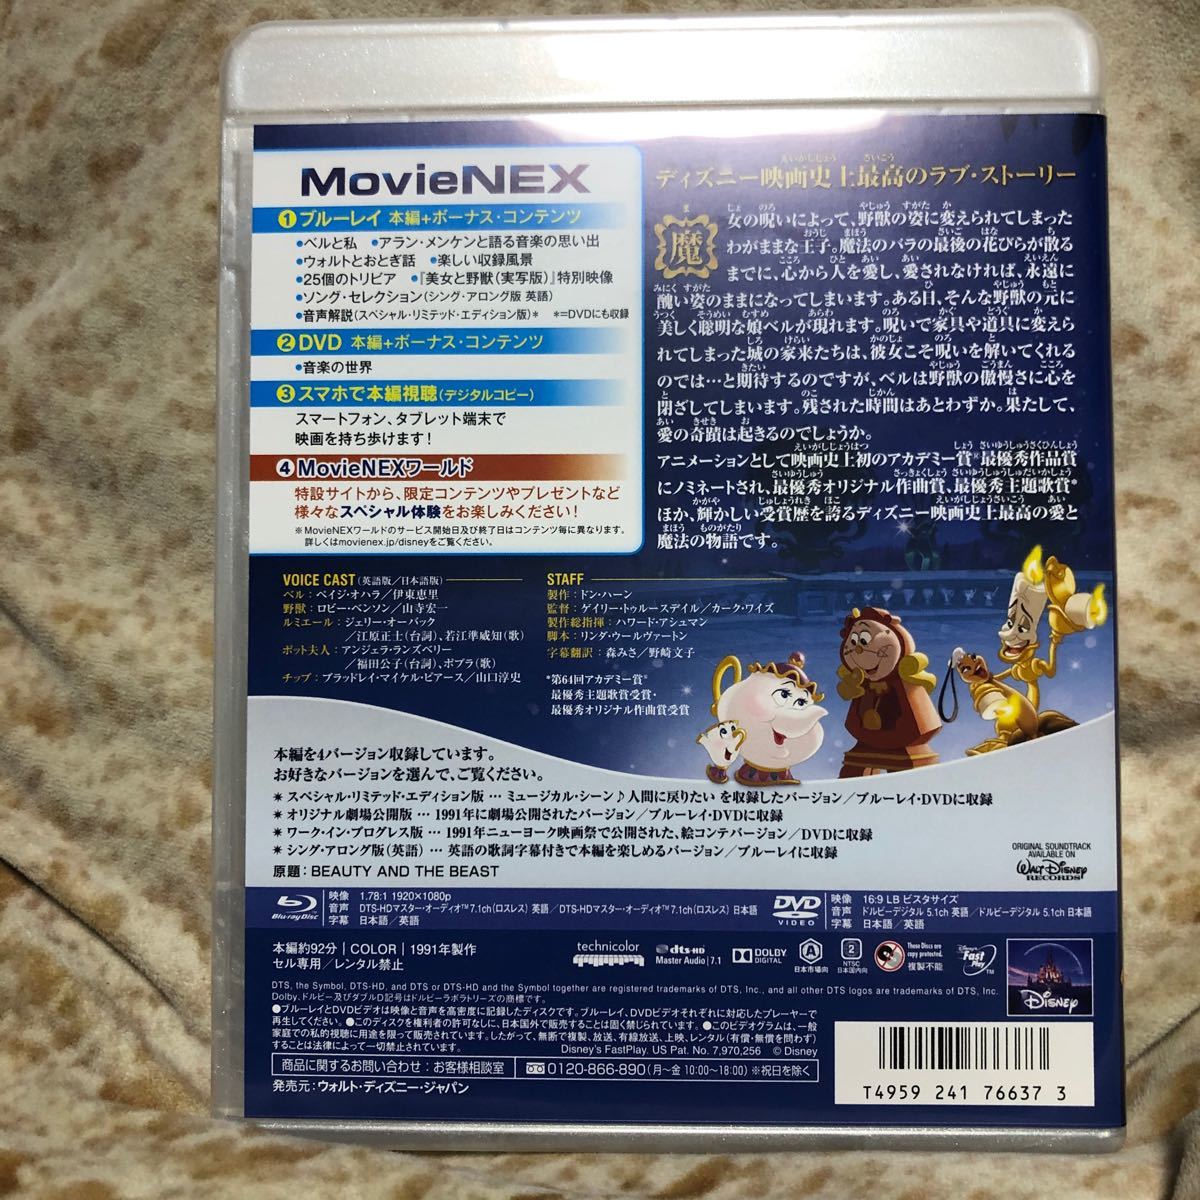 美女と野獣 MovieNEX (アニメーション版) [ブルーレイ+DVD+デジタルコピー 